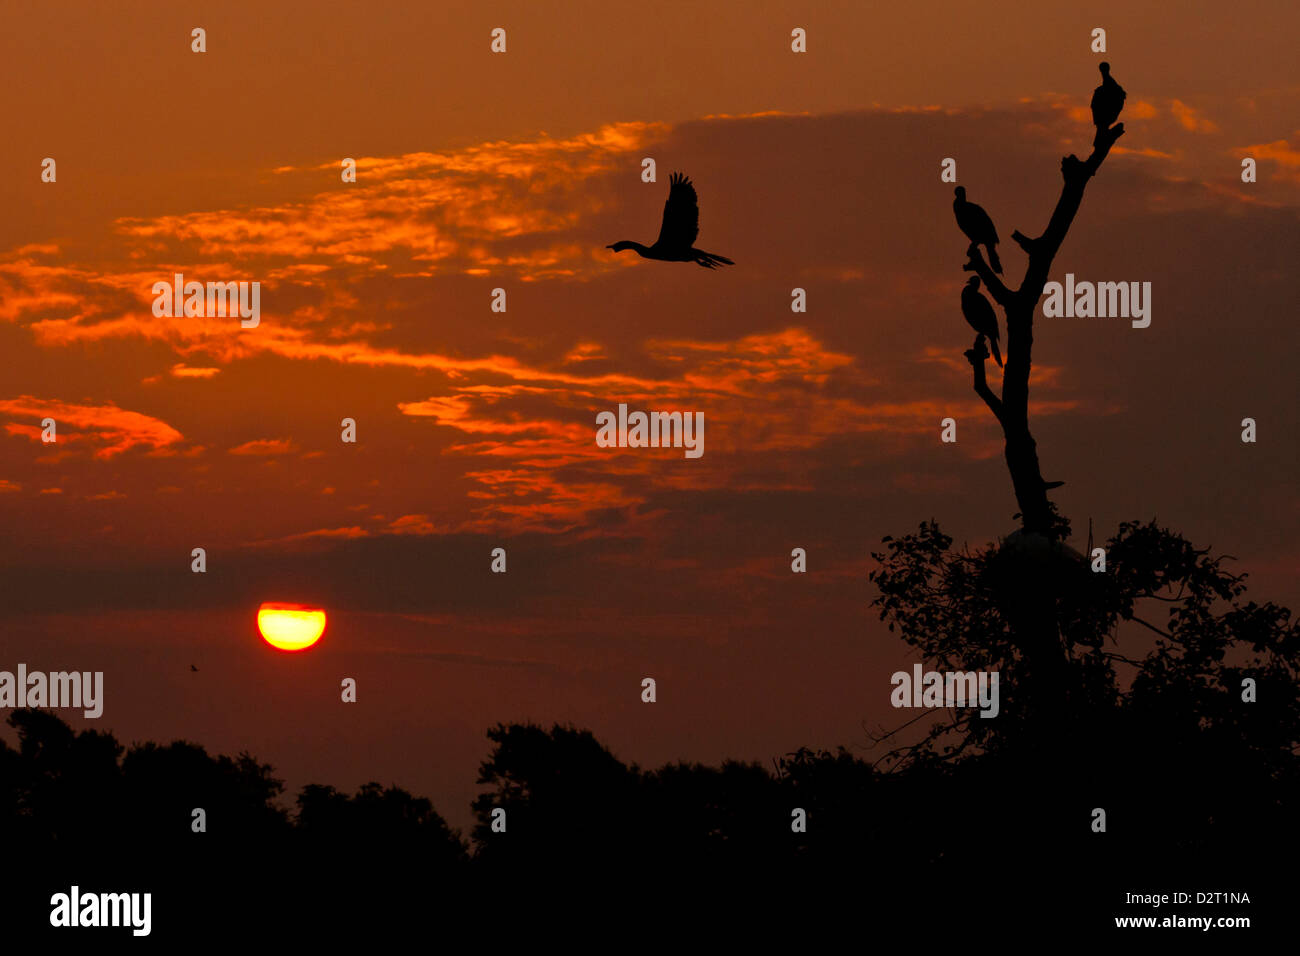 USA, Texas, île haute. Les cormorans se découpant au lever du soleil. En tant que crédit : Cathy & Gordon Illg / Jaynes Gallery / DanitaDelimont.com Banque D'Images